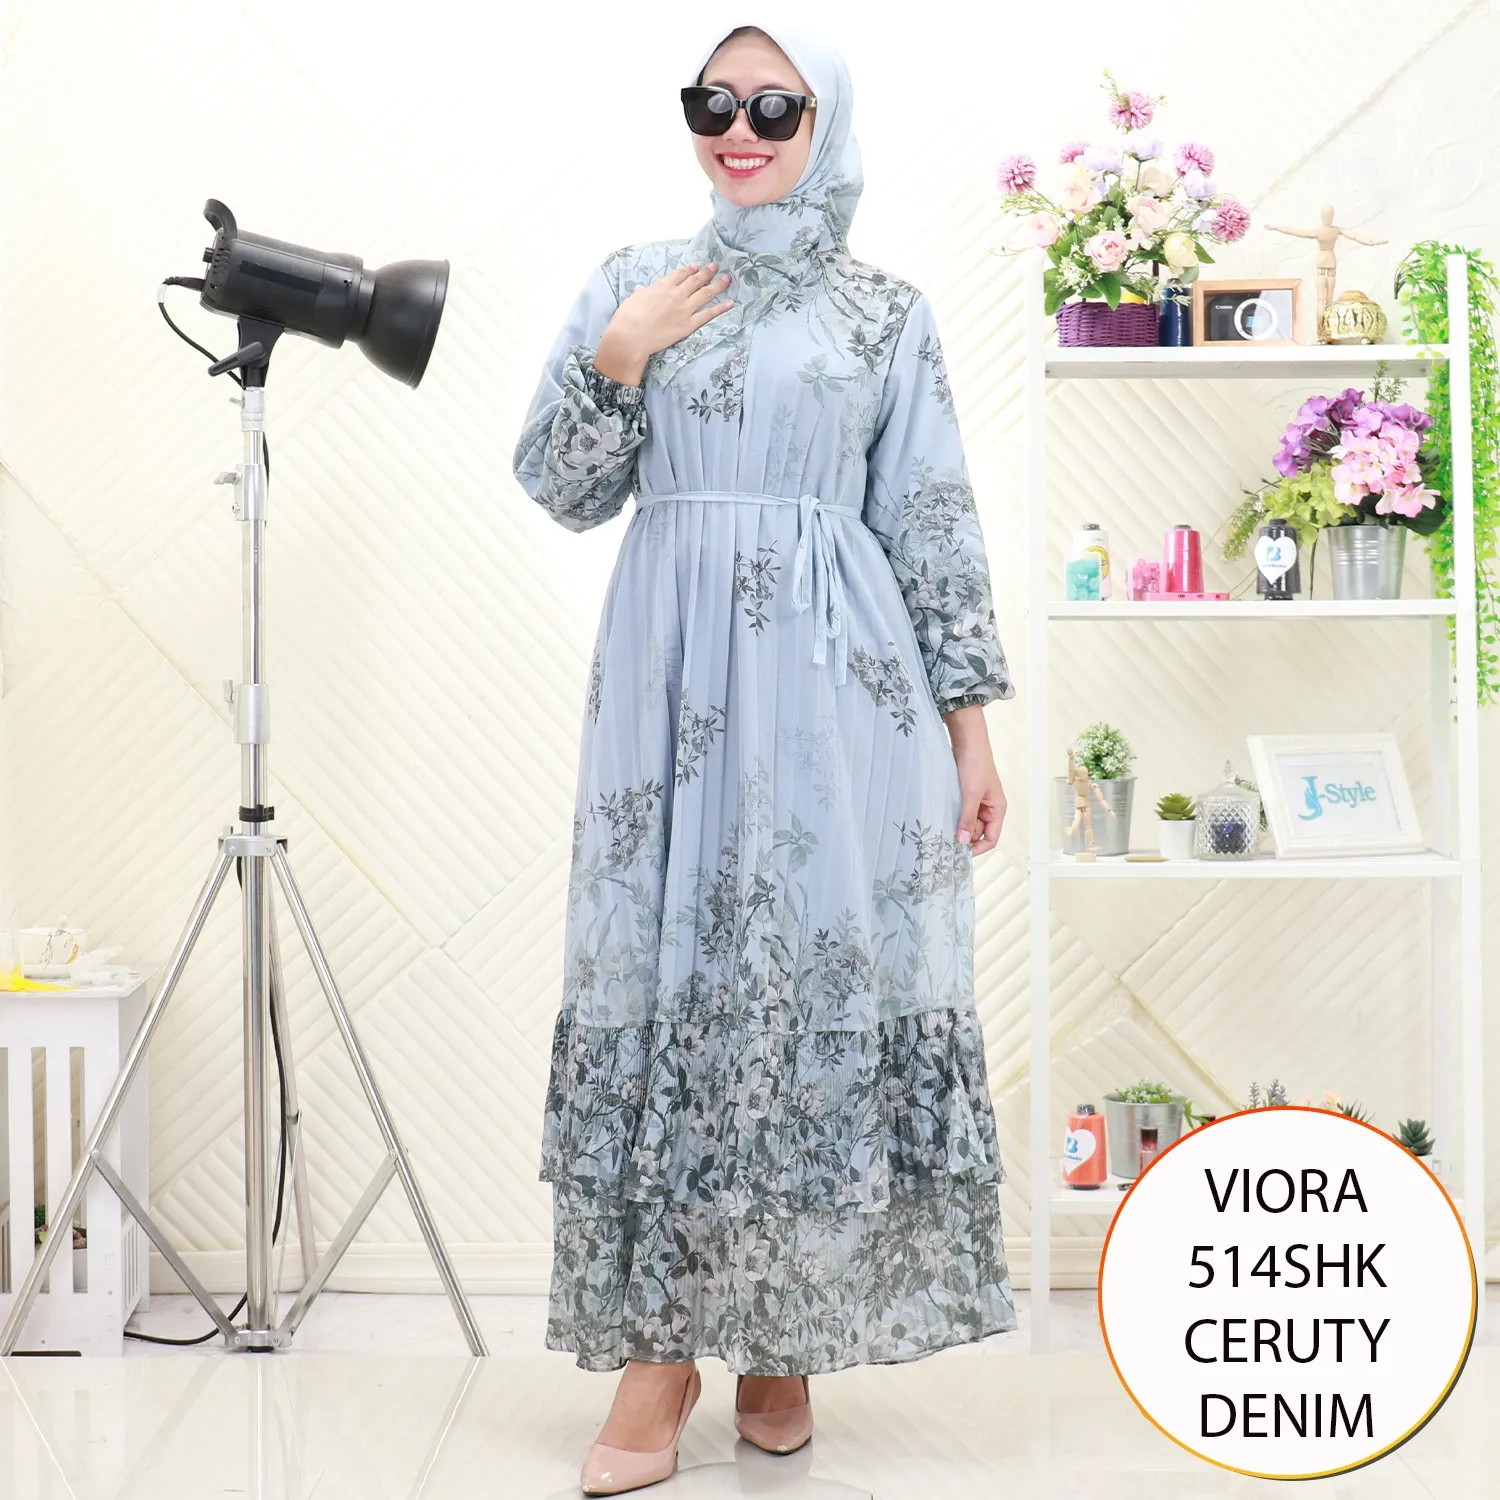 Viora Gamis Set Hijab Ceruty Plisket Motif Busui Friendly 514SHK ceruty - bajubaru.id, Belanja Online di bajubaru.id saja 